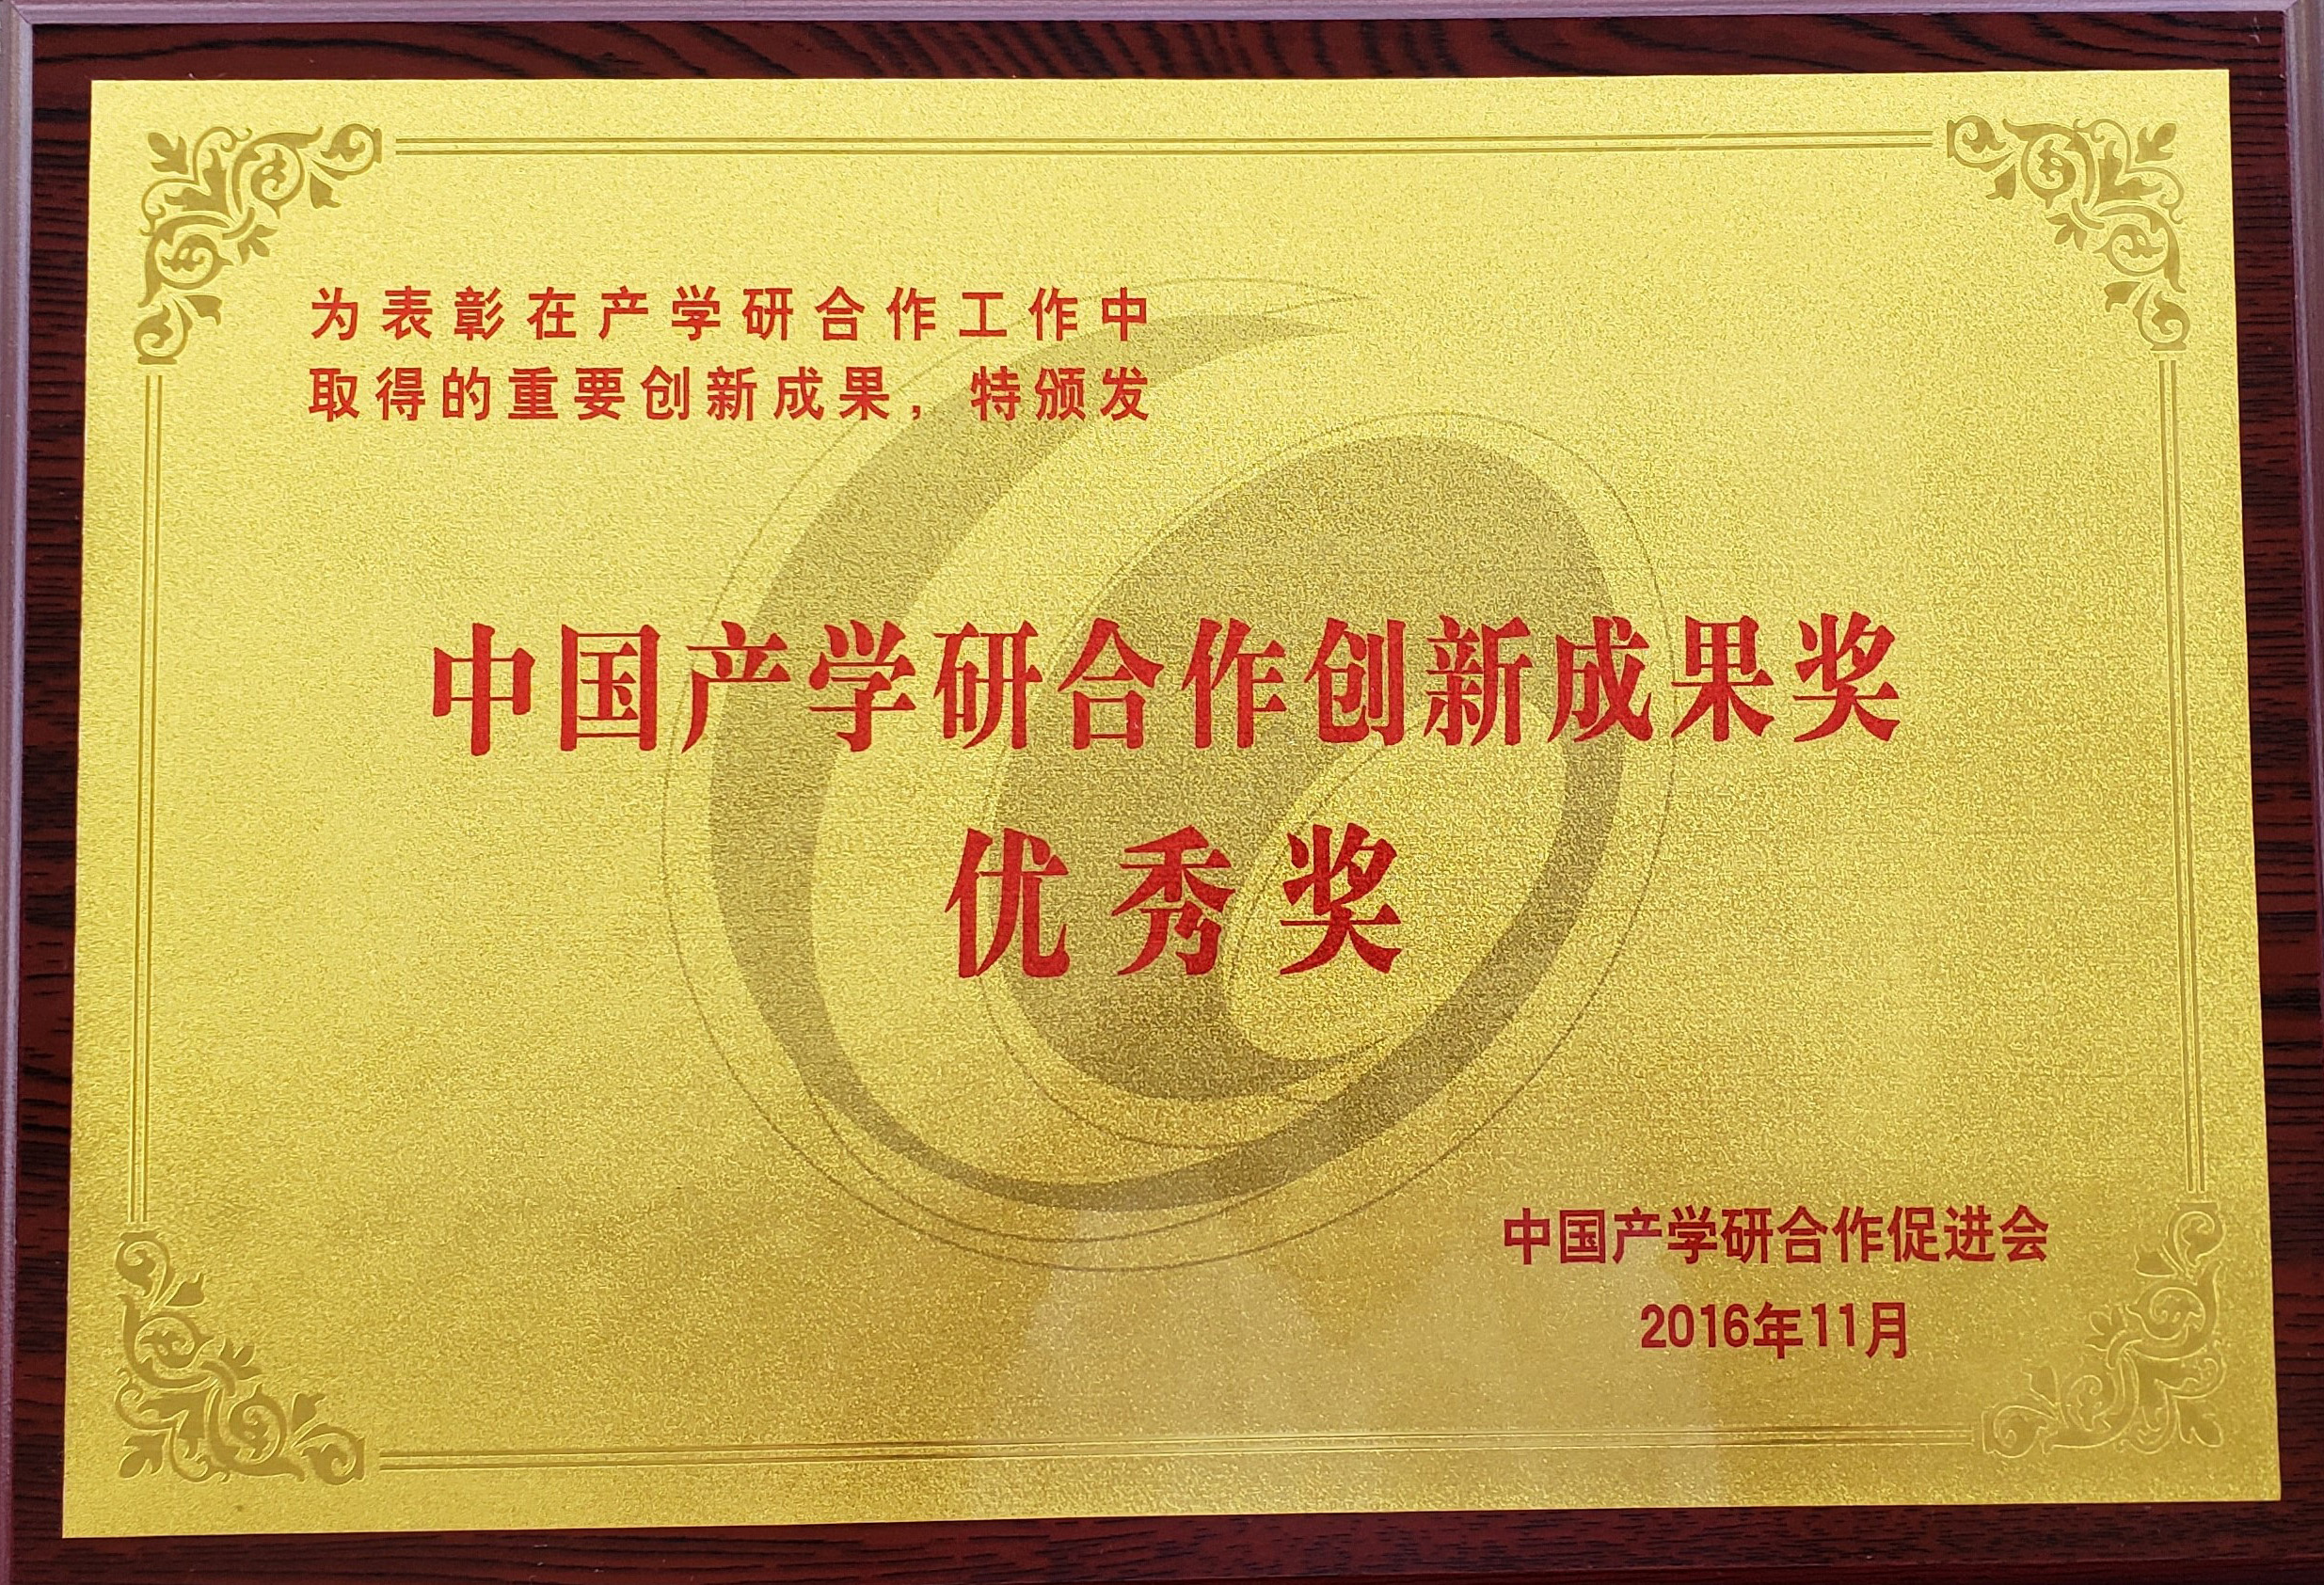 2016年中国产学研合作创新成果奖优秀奖